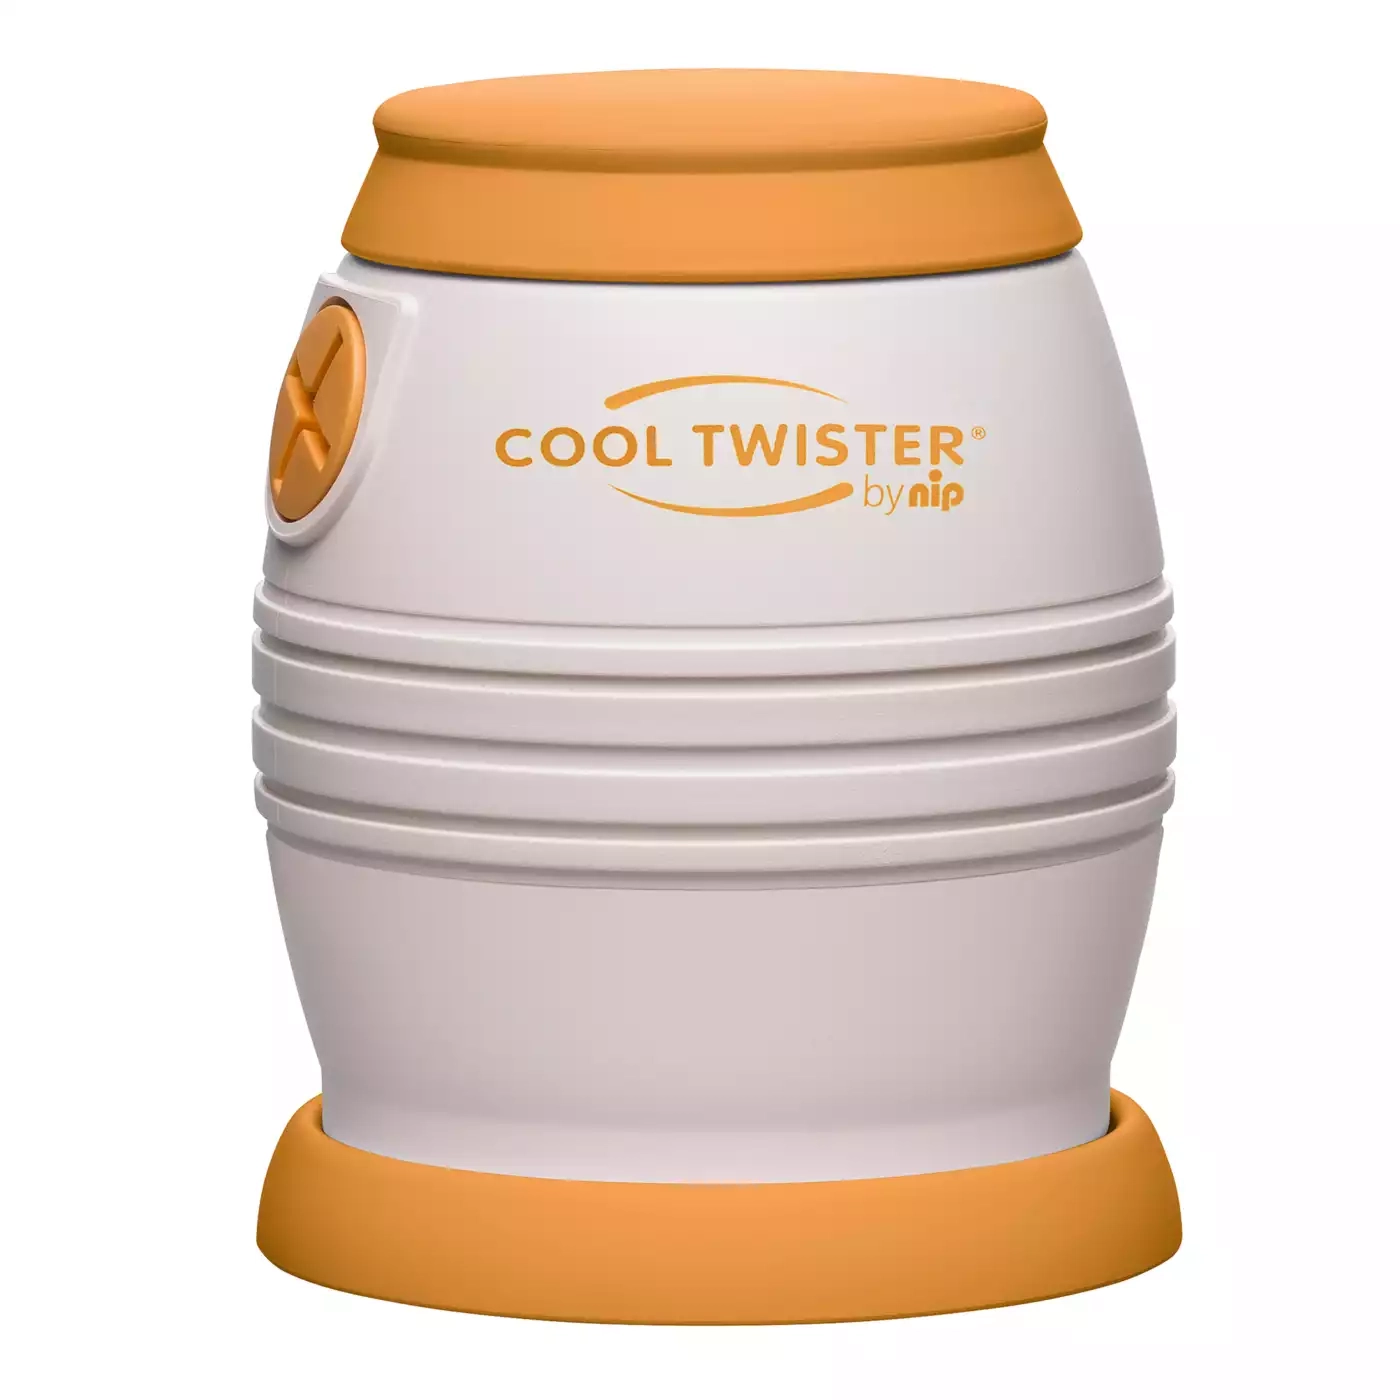 Cool Twister Fläschchenwasser-Abkühler nip Gelb 2000573056303 1